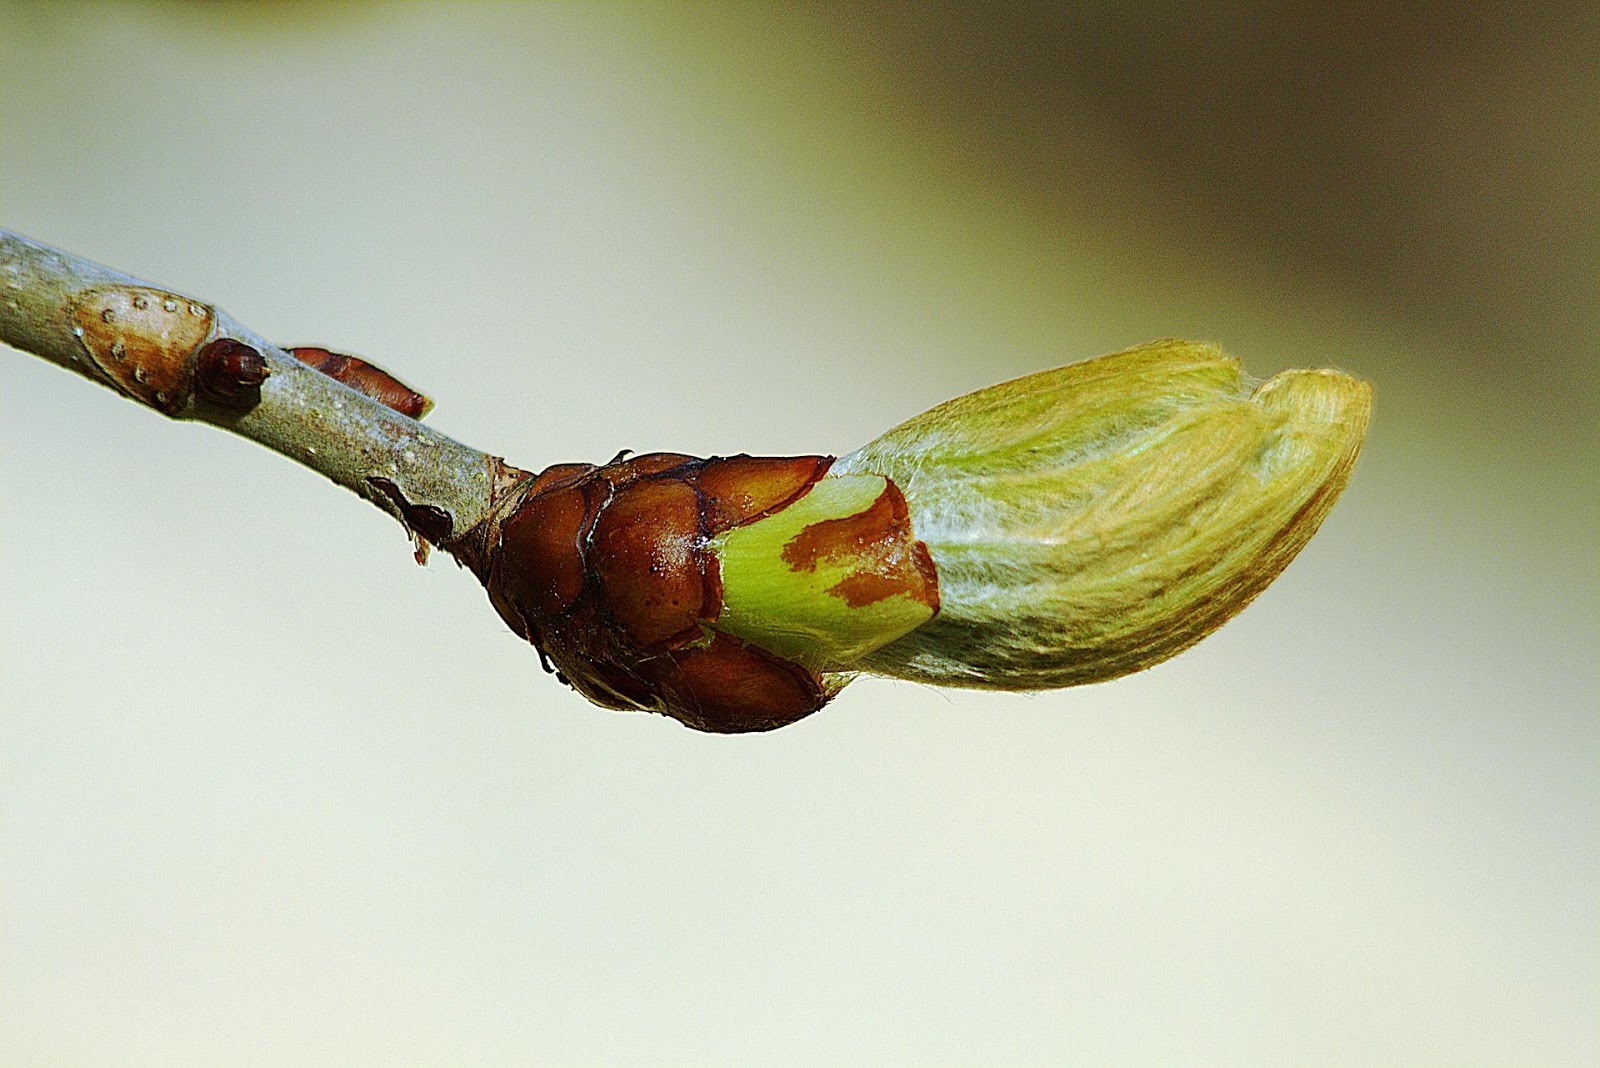 <b>Débourrement d’un bourgeon au printemps</b><div><i>bud-1347462_1920, Image par Jiricek72 de Pixabay, https://pixabay.com/fr/photos/bourgeon-printemps-fermer-arbre-1347462/</i><b><br></b></div>